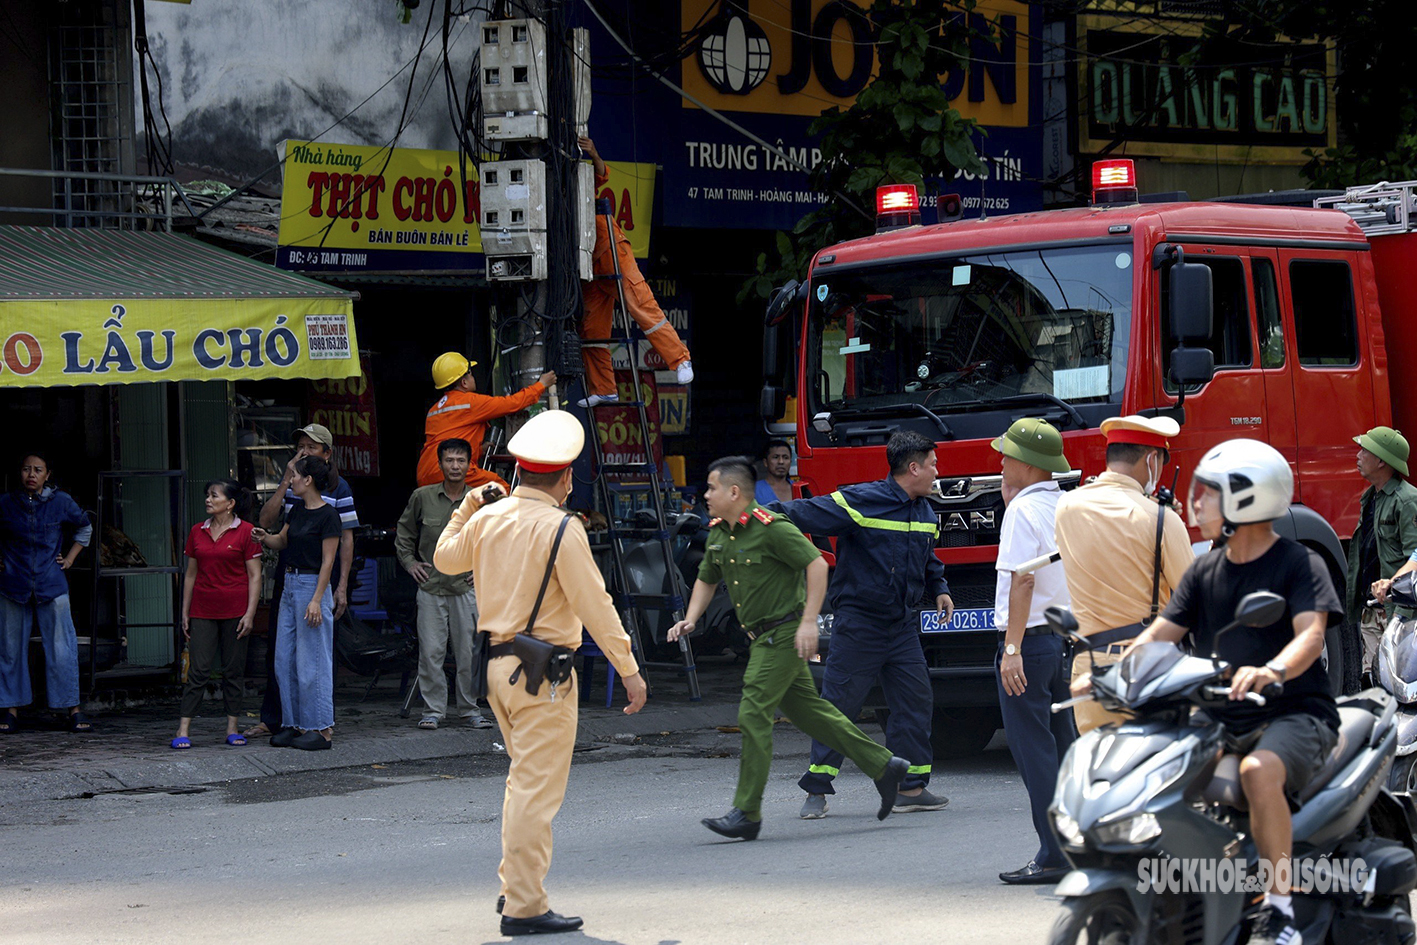 Cảnh sát PCCC&CNCH nhanh chóng dập tắt vụ hỏa hoạn trên đường Tam Trinh, Hà Nội - Ảnh 4.